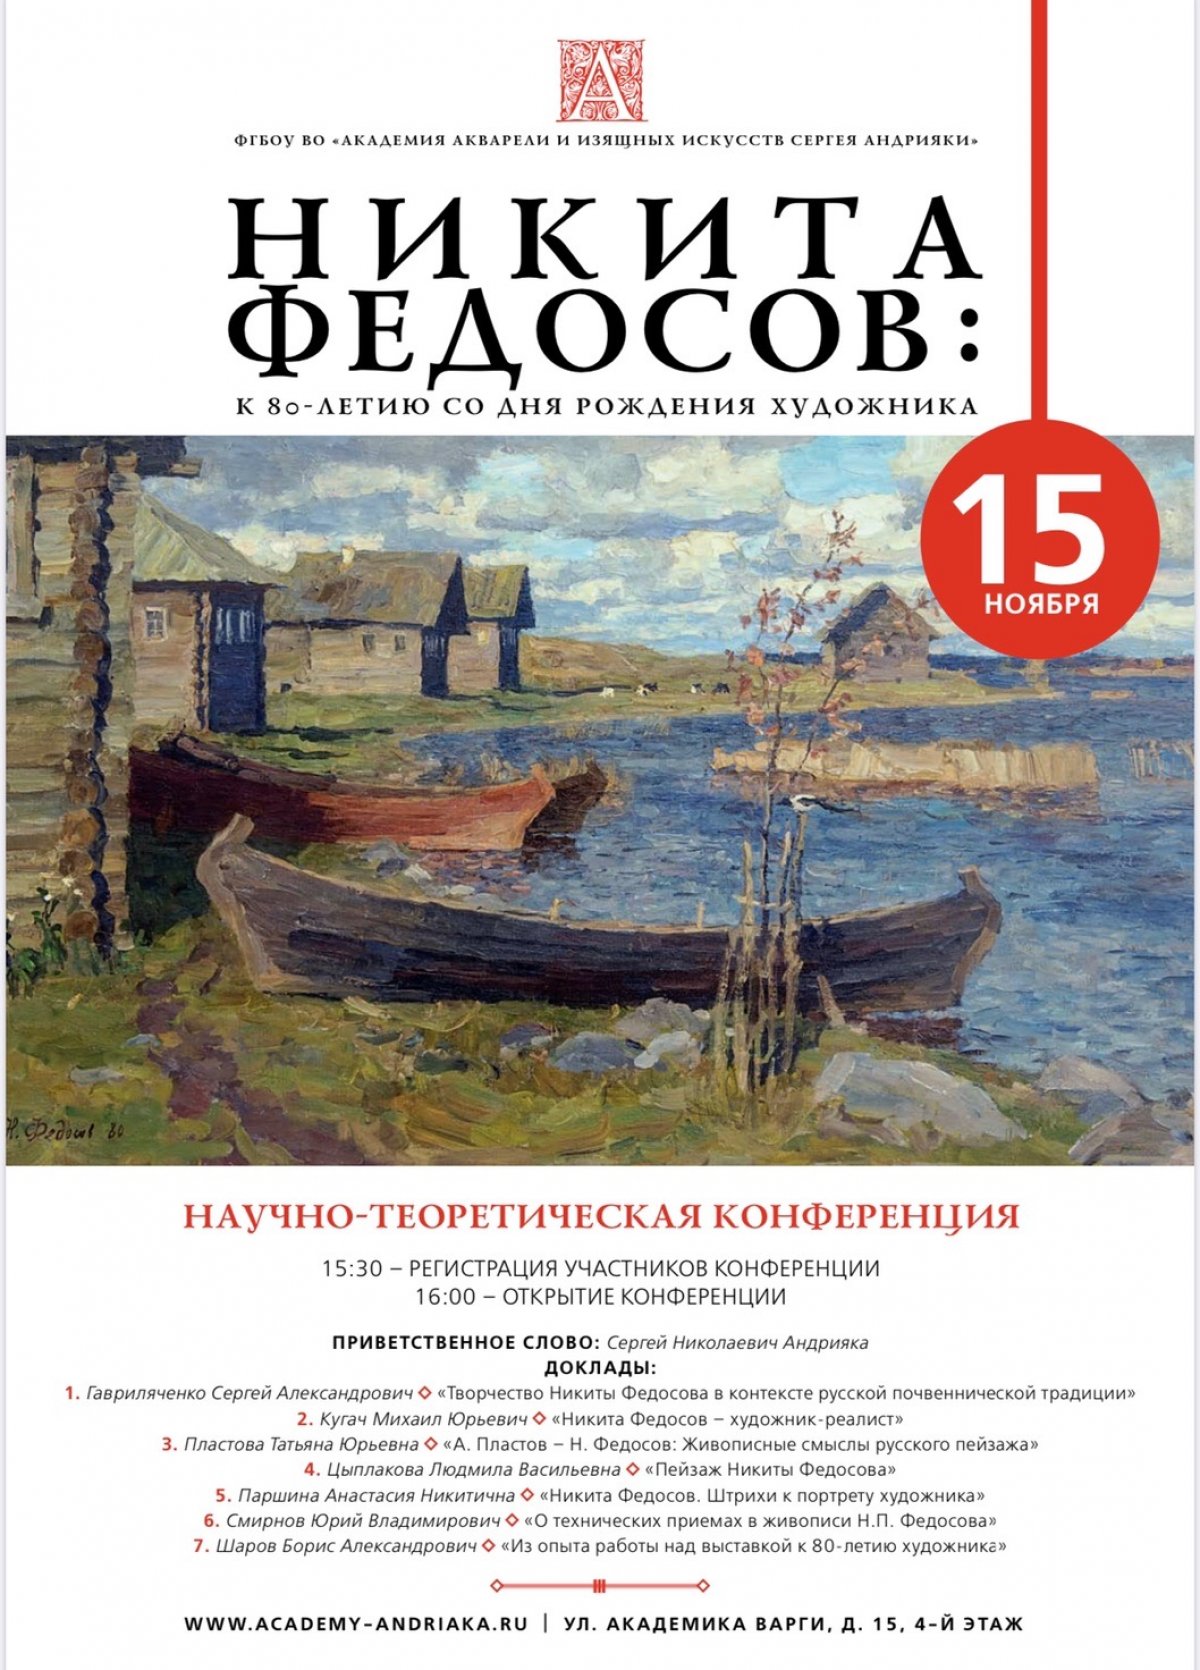 15 ноября в Академии Акварели и Изящных Искусств состоится научно-теоретическая конференция Никиты Федосова к 80-ти летию художника